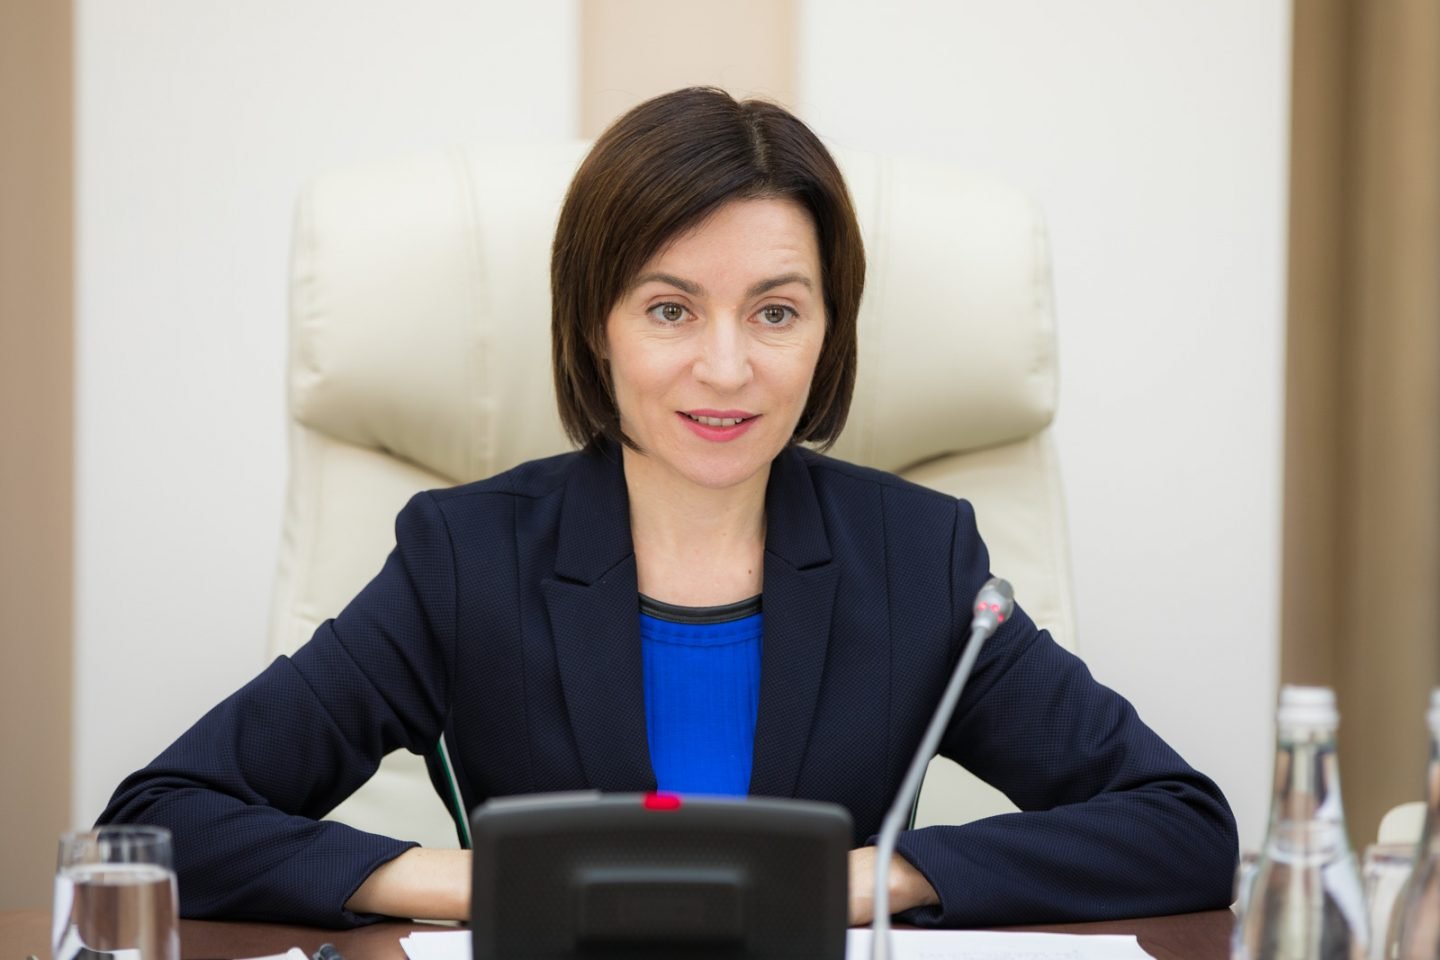 Lidera PAS, Maia Sandu, atacată din nou de către Andrei Năstase: Urmăreşte doar dividende politice pentru partidul său